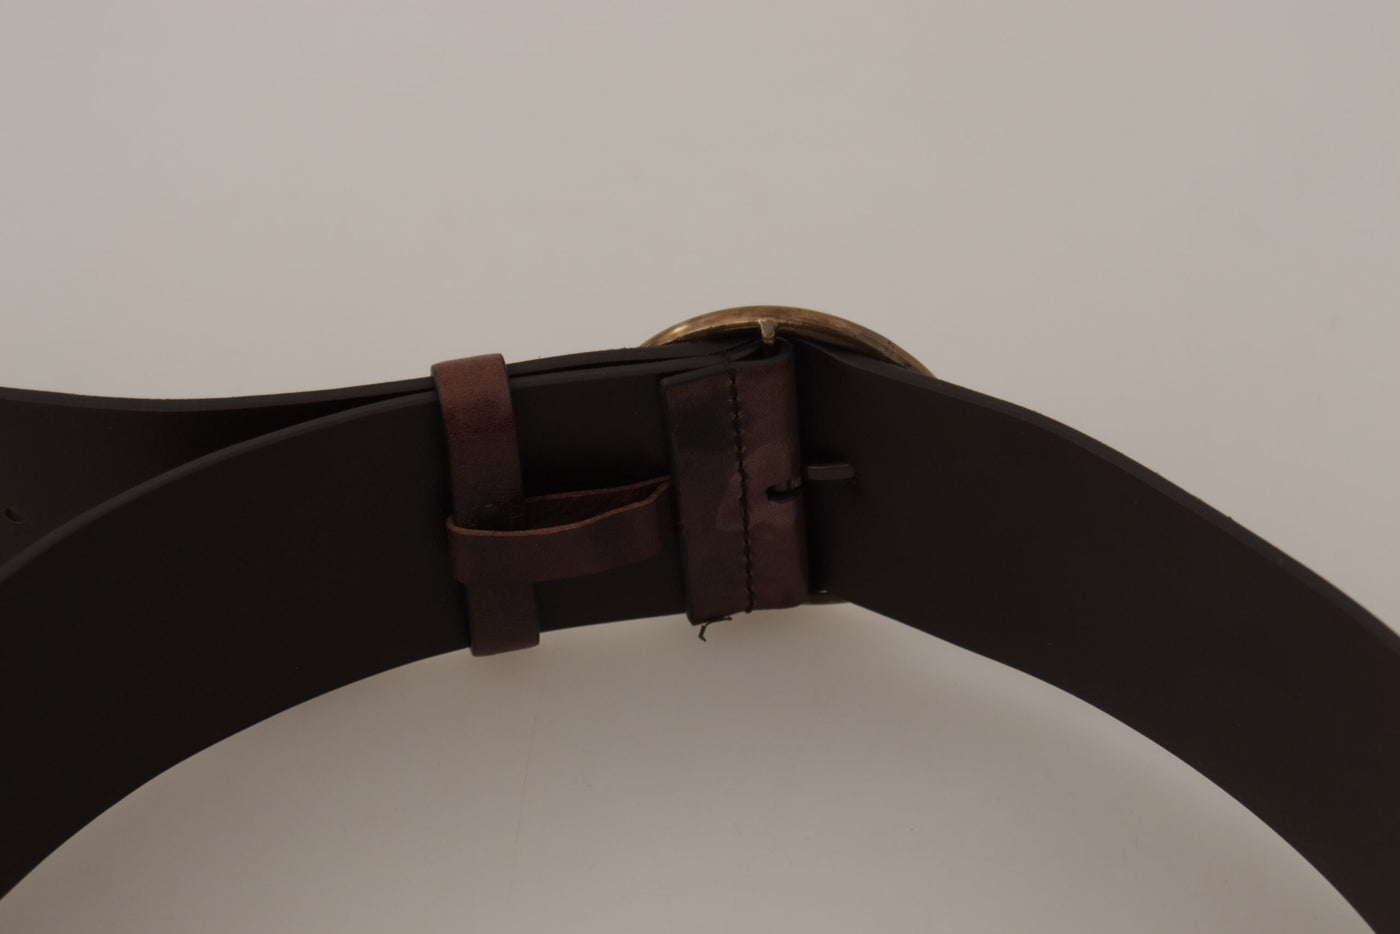 Dolce & Gabbana Dark Brown Wide Calf Leather Logo Round Buckle Belt